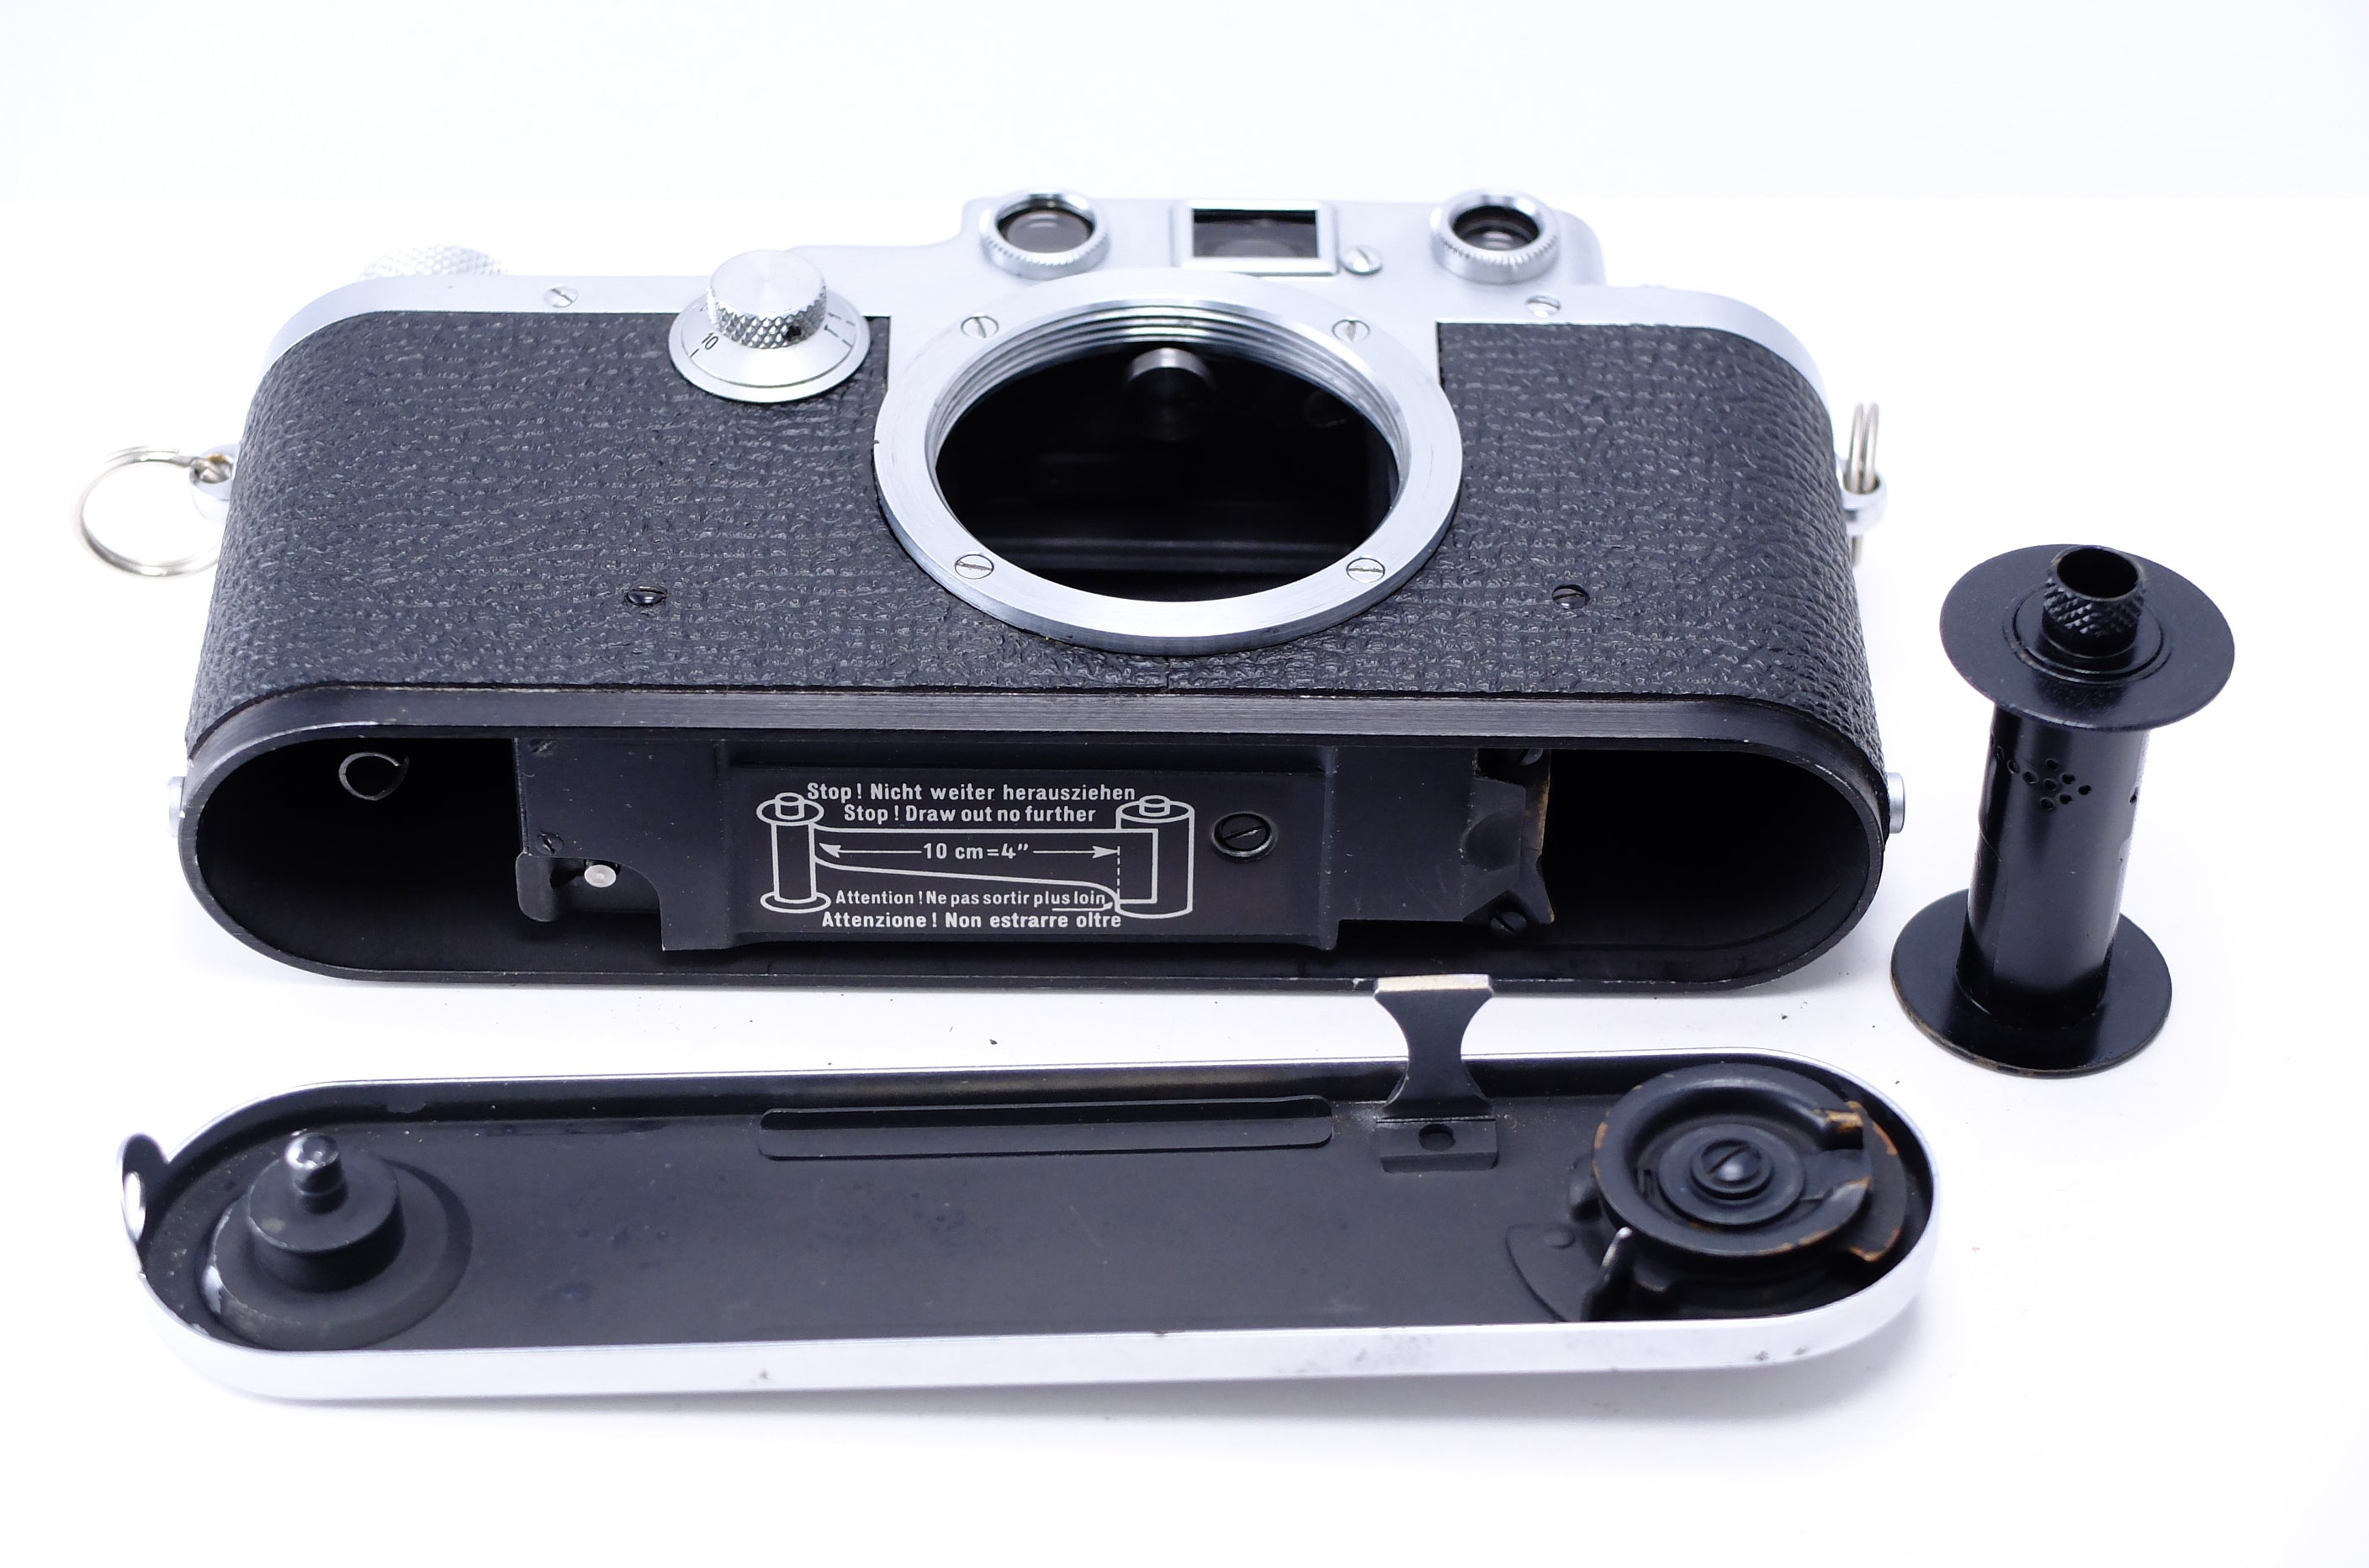 オーバーホール済み ライカ3F Leica ⅢF - カメラ